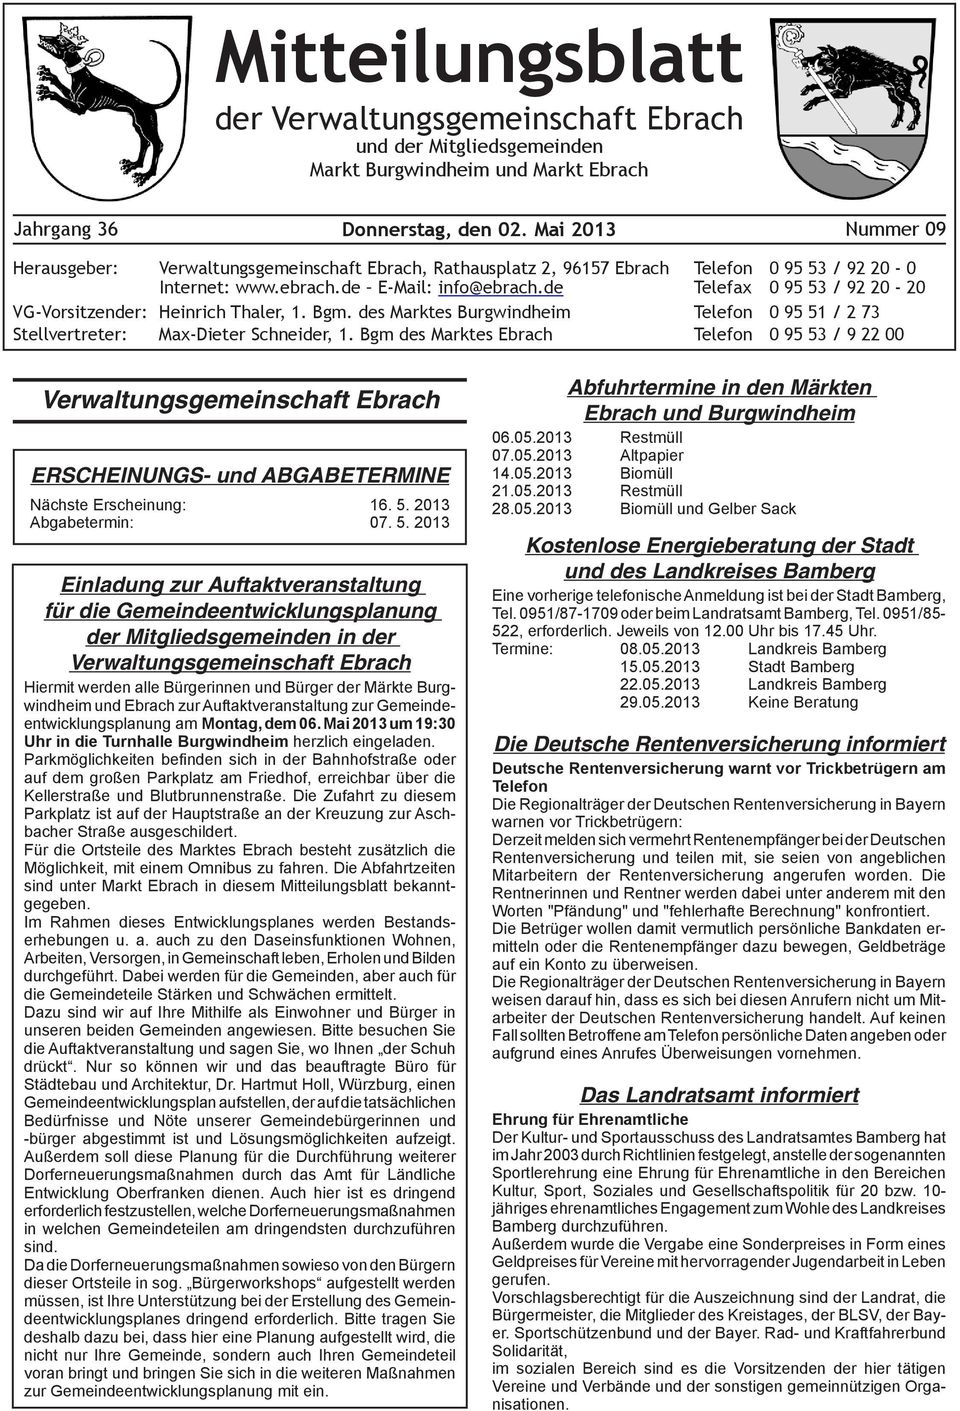 de Telefax 0 95 53 / 92 20-20 VG-Vorsitzender: Heinrich Thaler, 1. Bgm. des Marktes Burgwindheim Telefon 0 95 51 / 2 73 Stellvertreter: Max-Dieter Schneider, 1.